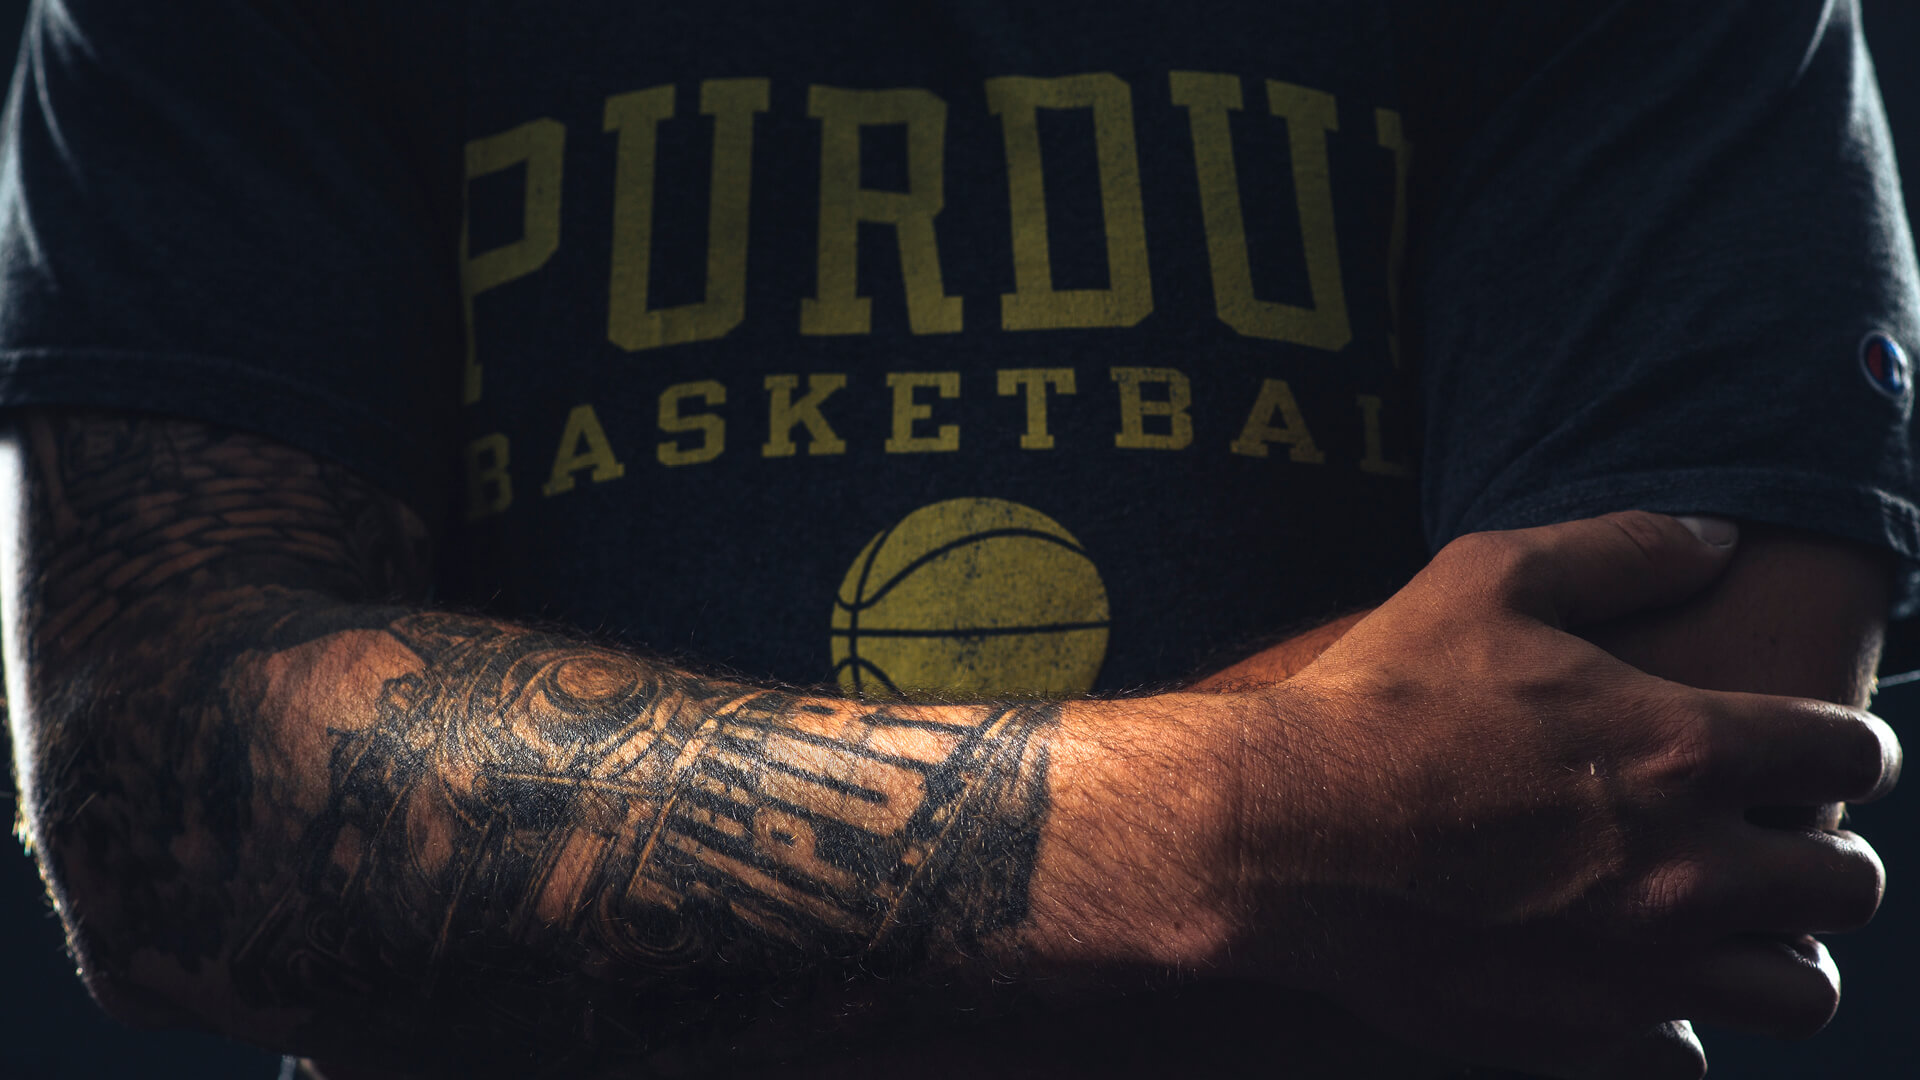 Purdue tattoo